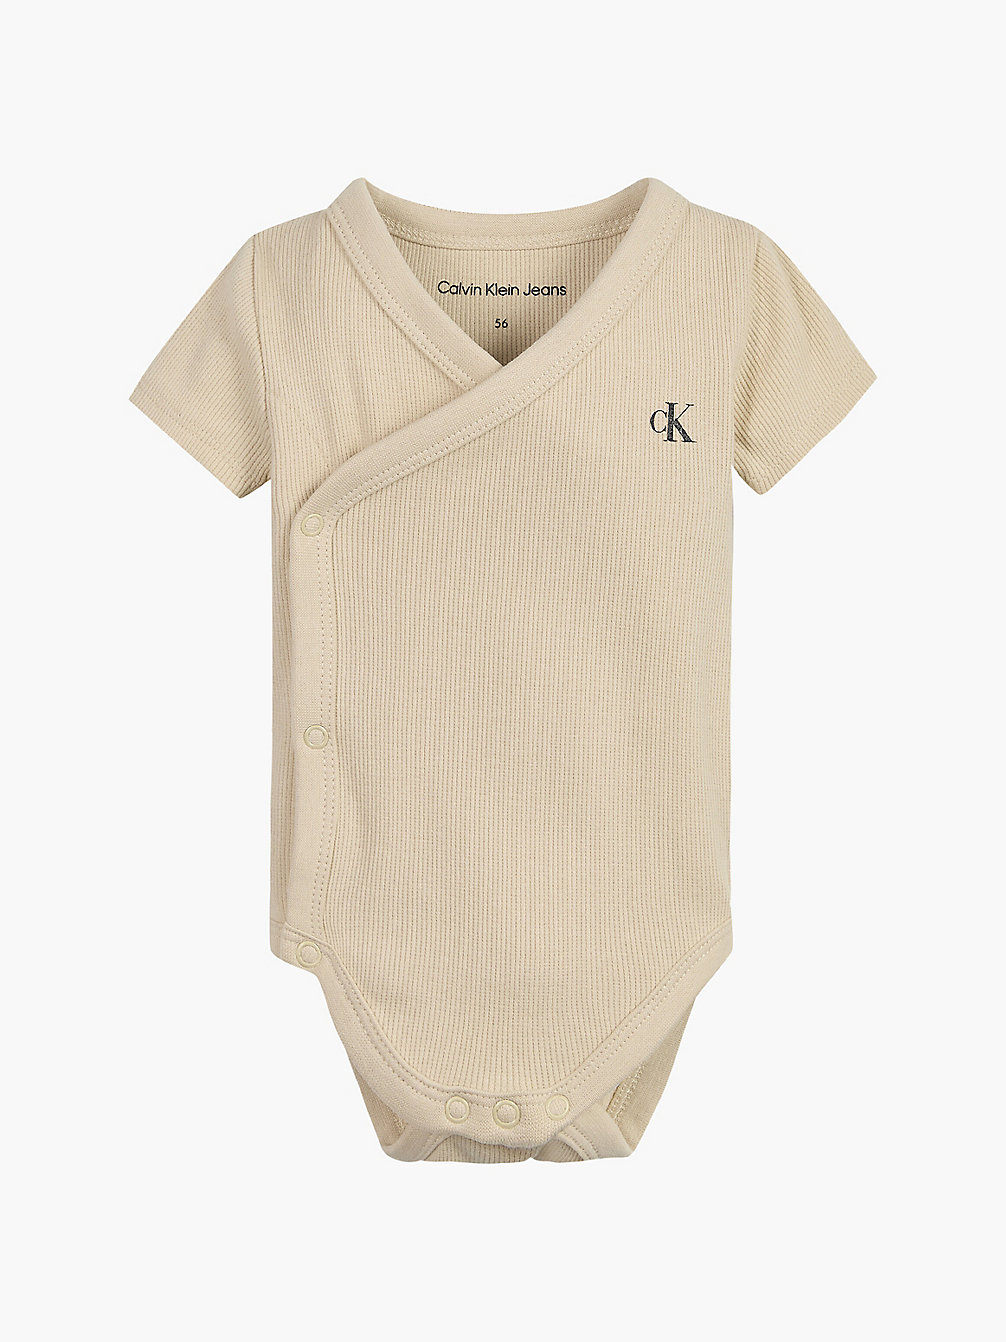 MUSLIN Newborn Bodysuit undefined newborn Calvin Klein